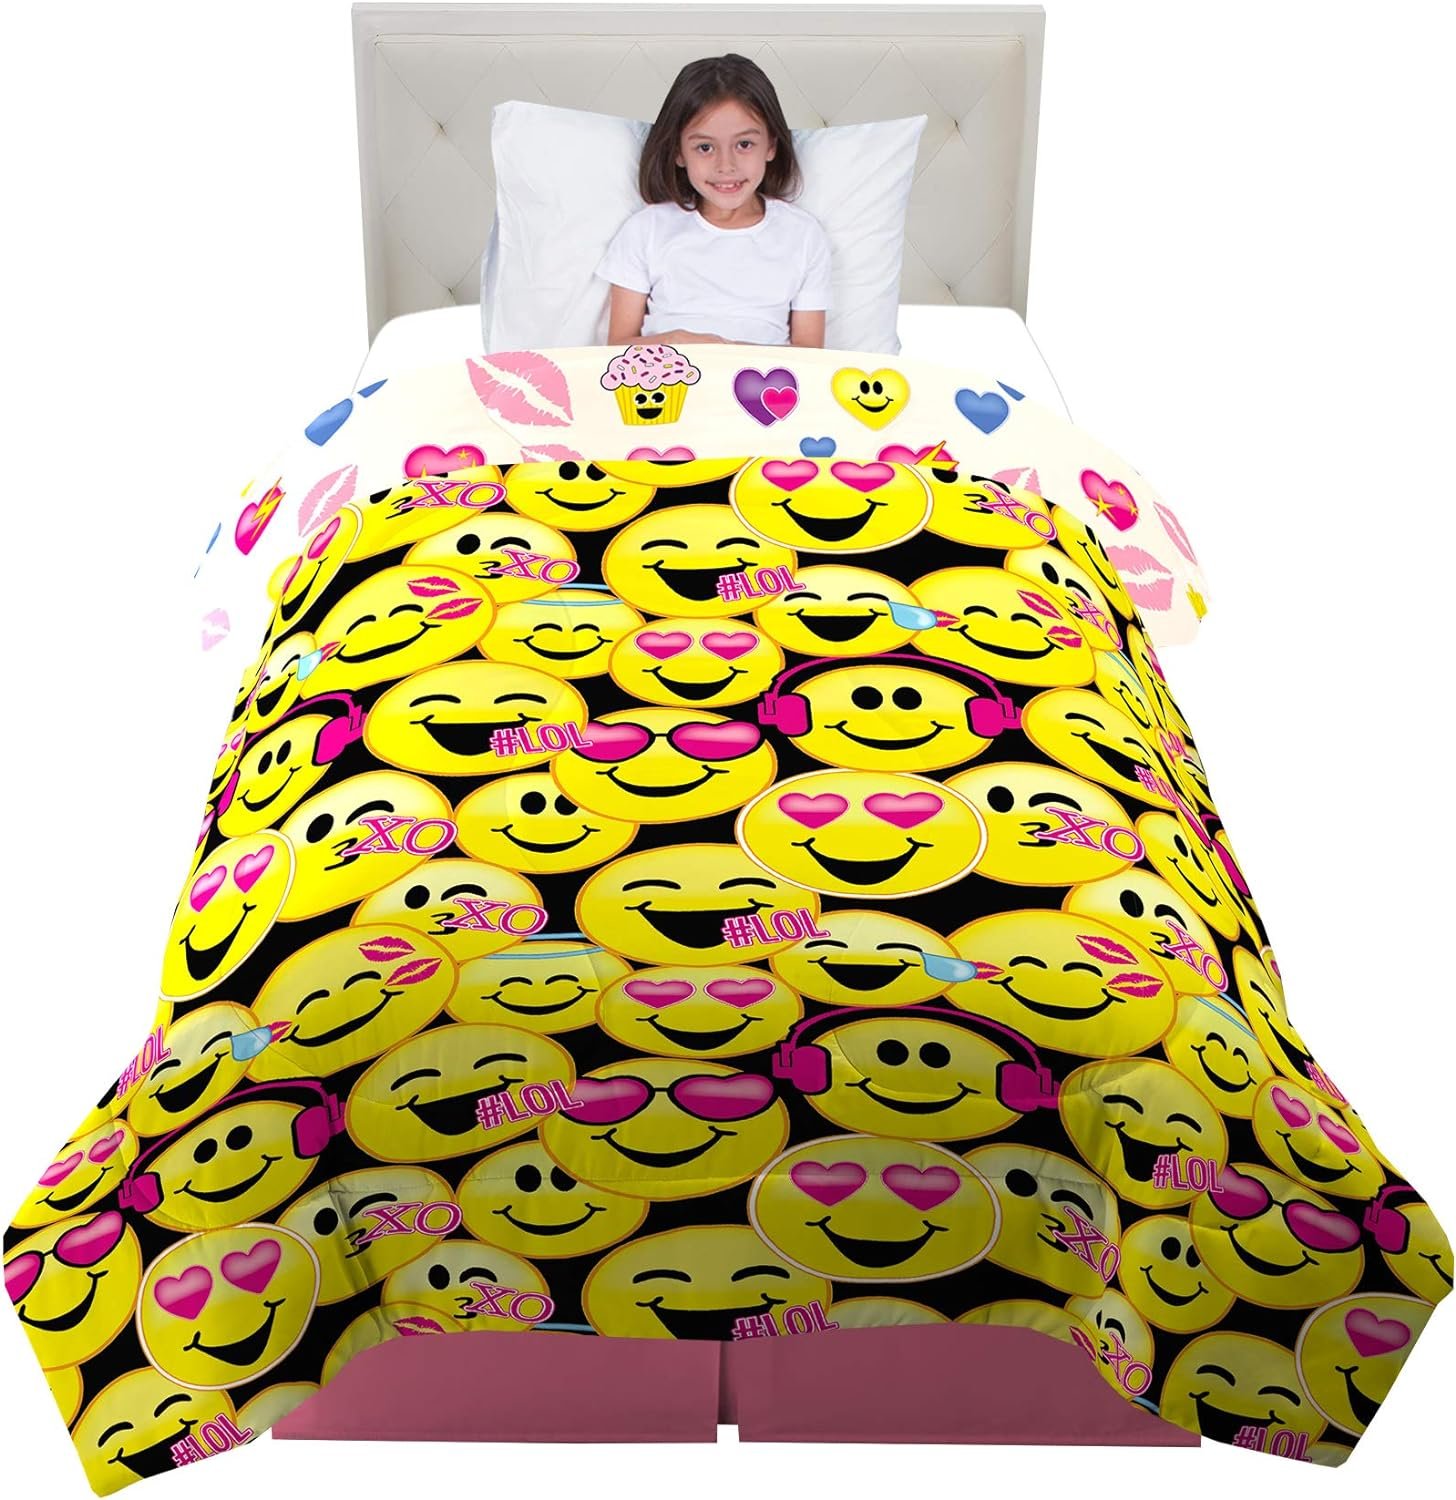 Franco Kids Bedding Super Soft Comforter, Twin Size 64" x 86", Emojination - image 1 of 5